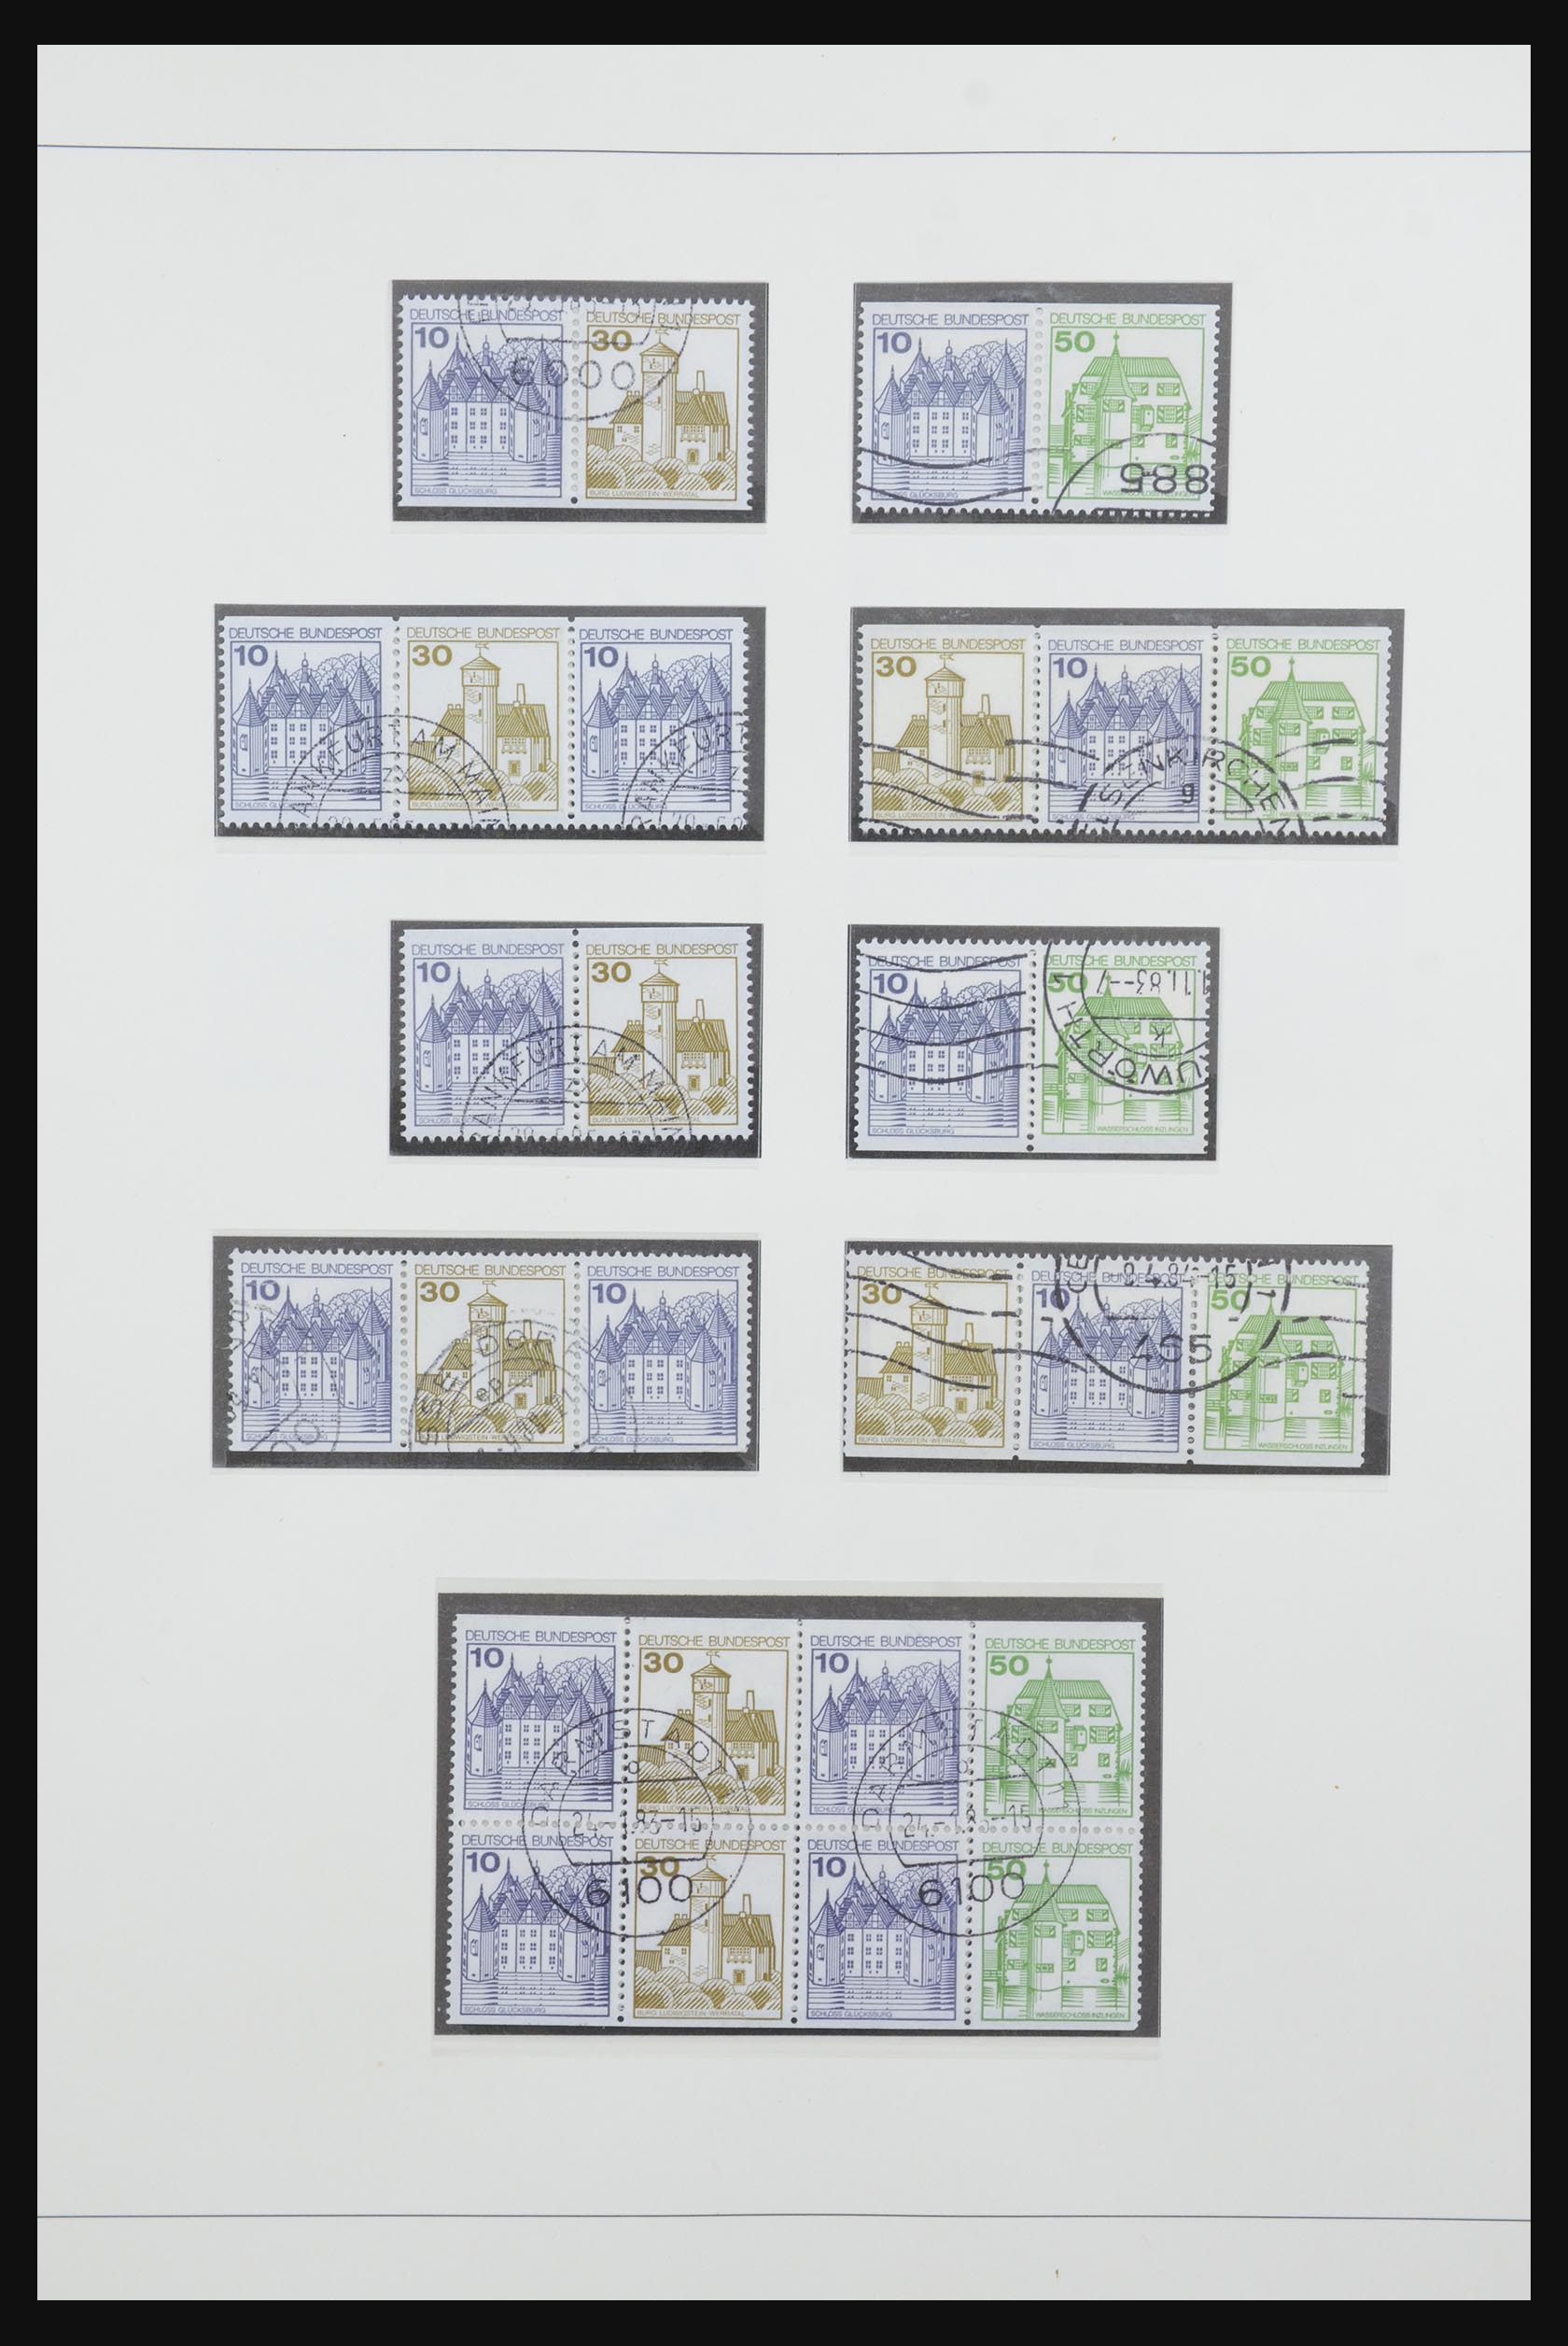 31842 062 - 31842 Bundespost combinaties 1951-2003.